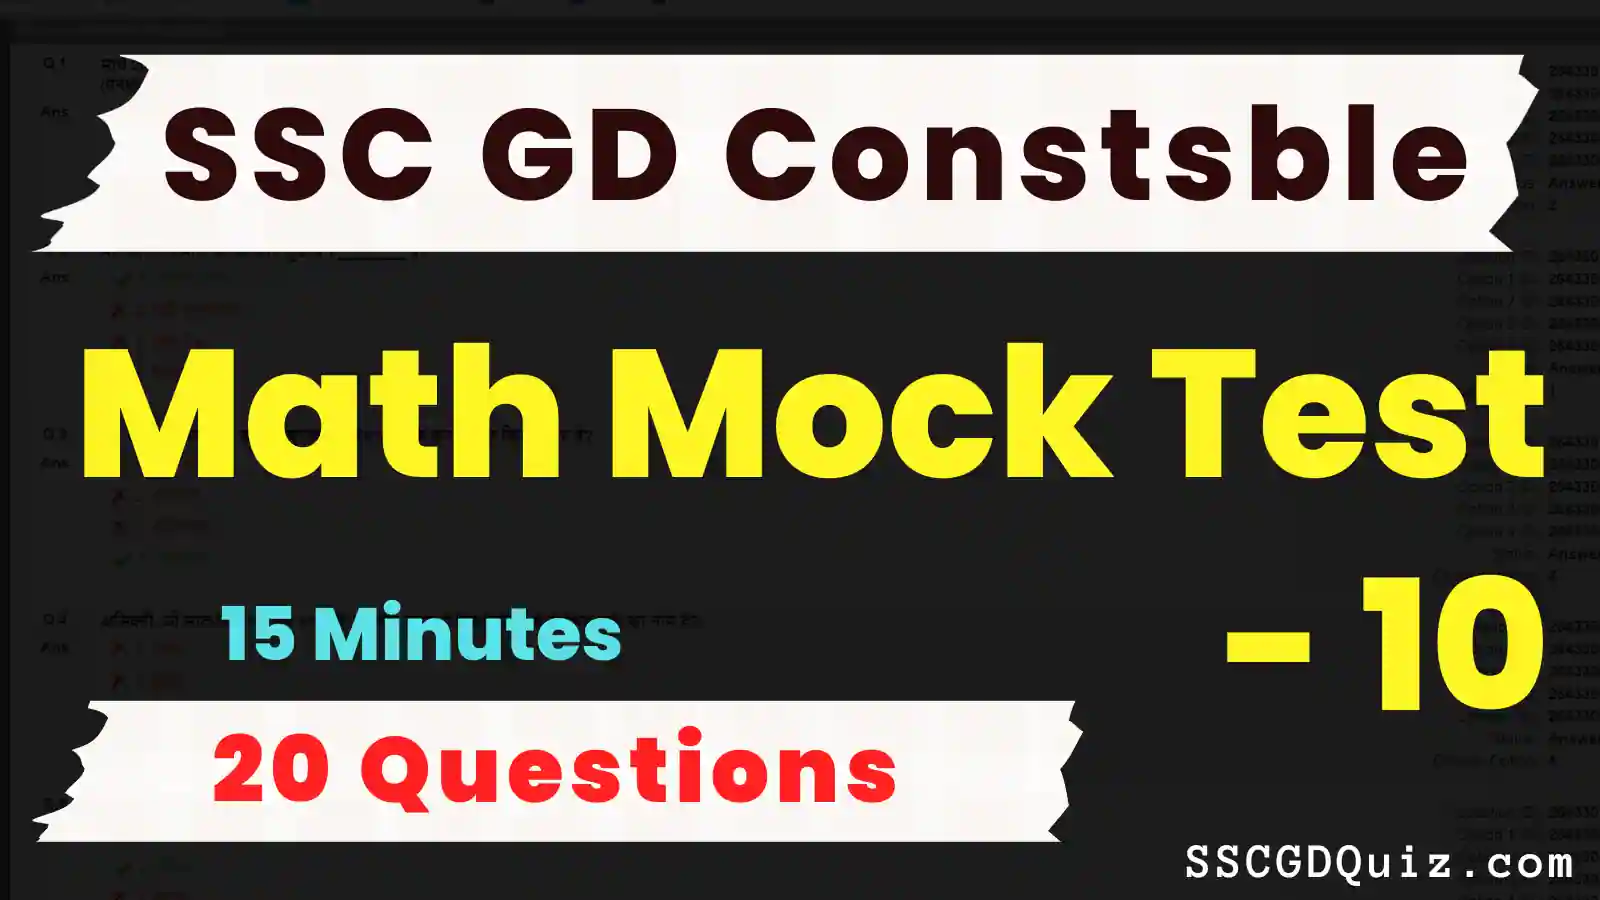 SSC GD Constable Math Mock Test – 10